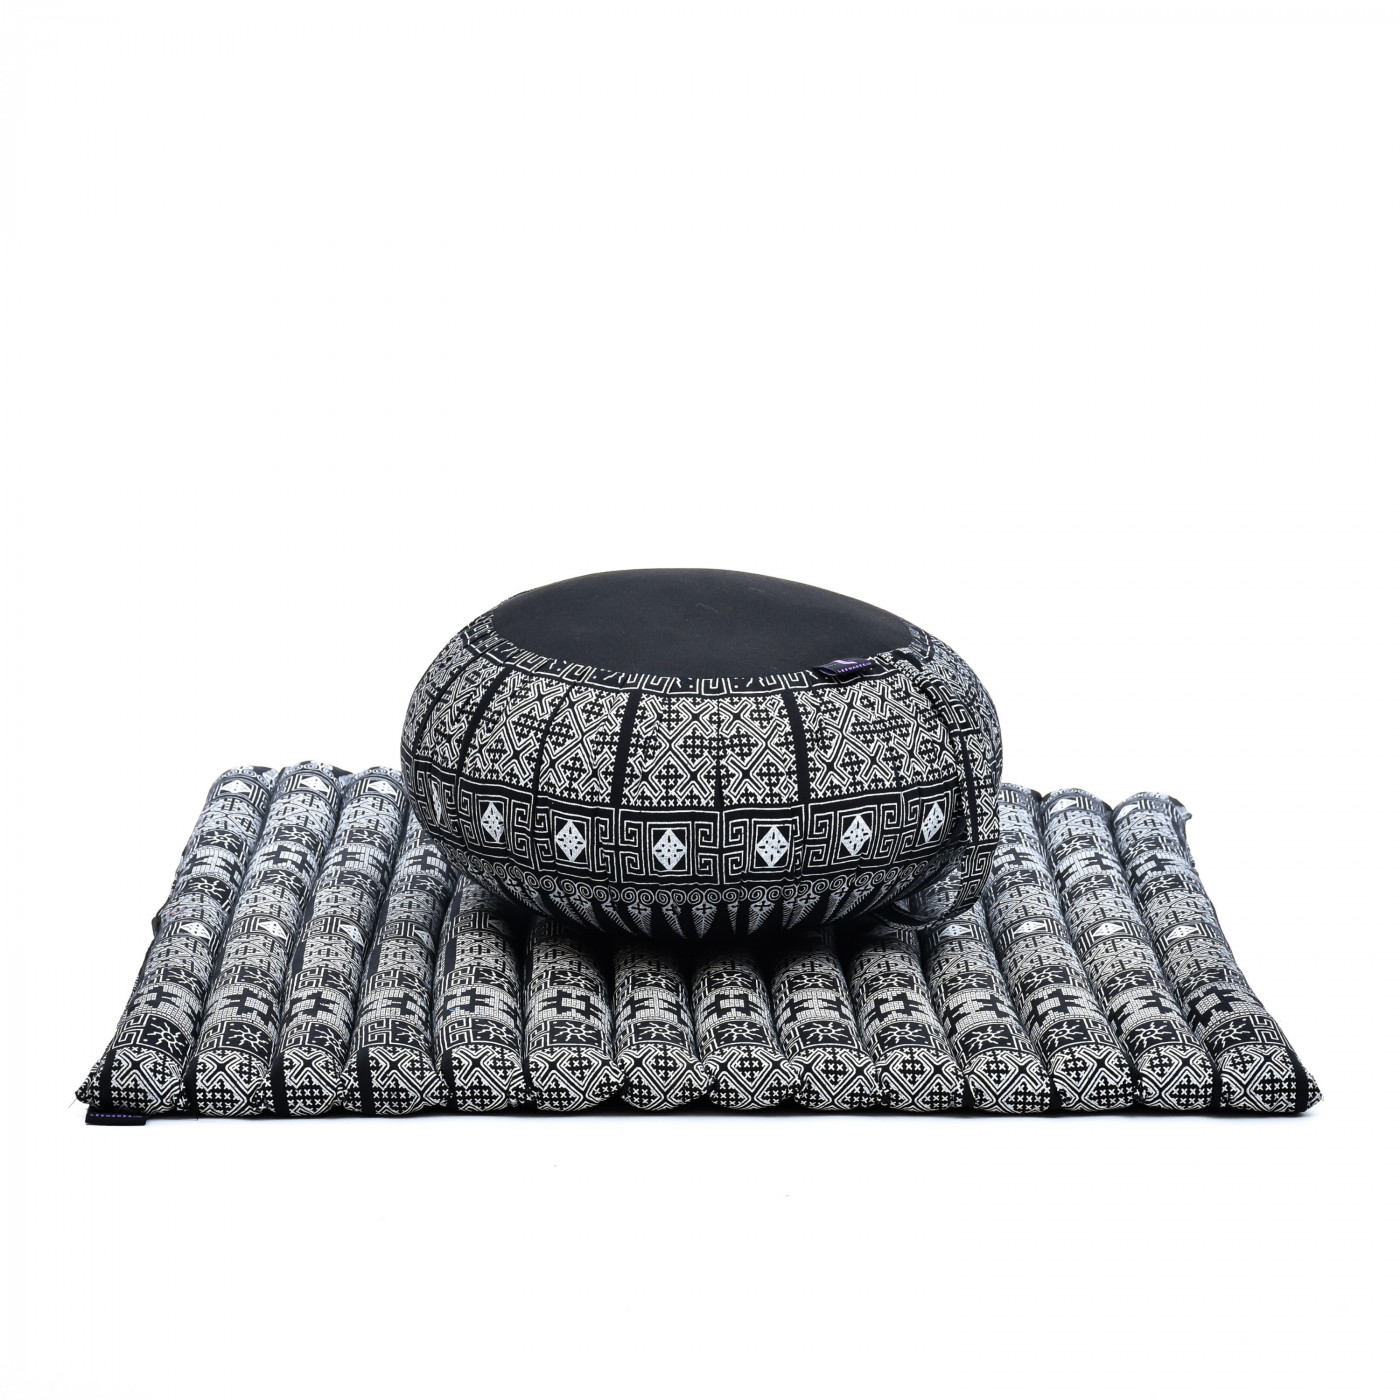 Zafu Meditationskissen rund Kapok Füllung Baumwolle schwarz Zen Yoga 